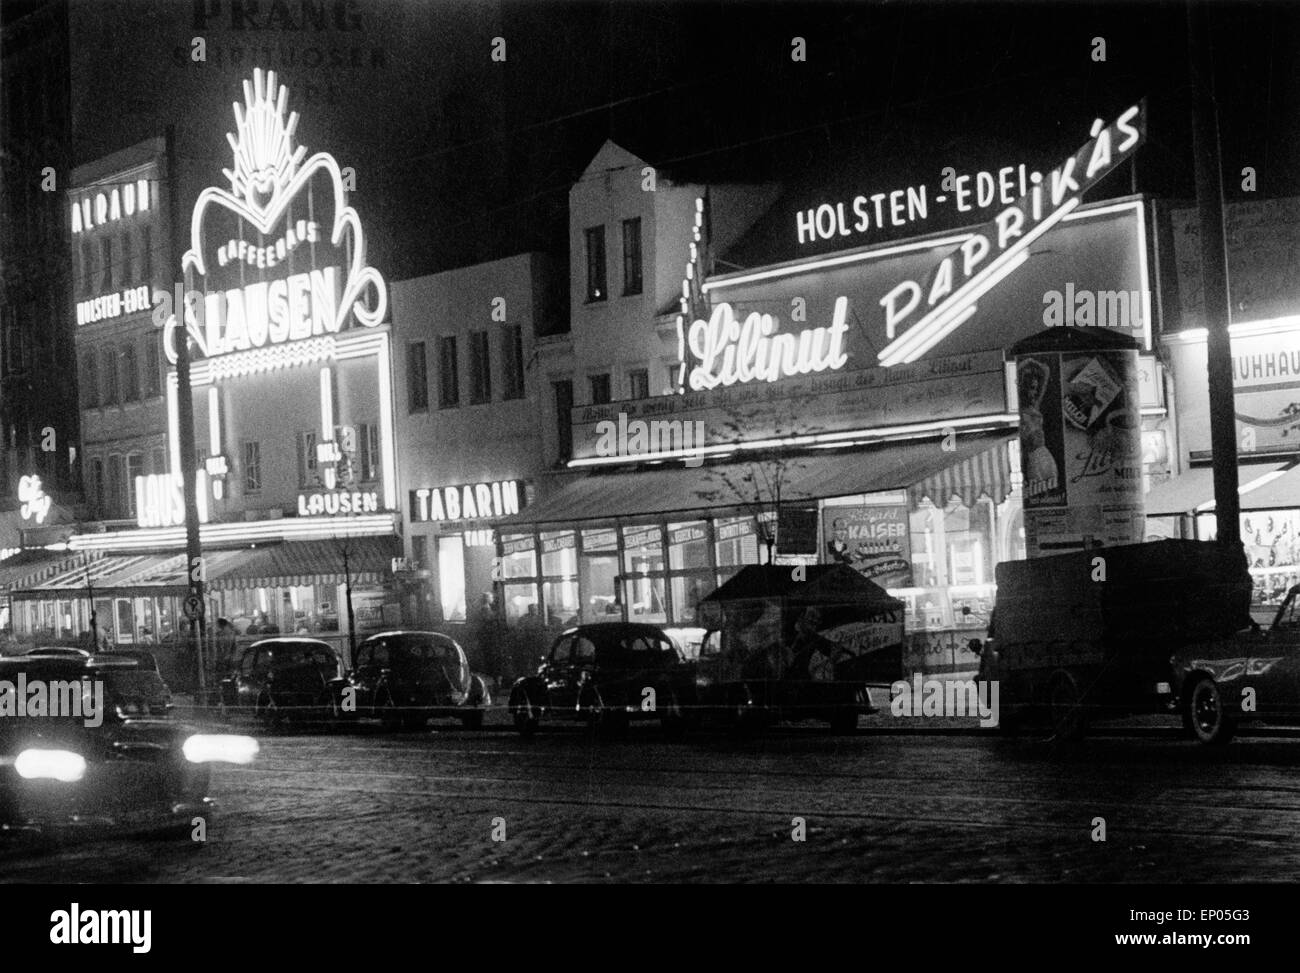 Nachtclubs auf der Reeperbahn in Hamburg bei Nacht, 1950er Jahre. Fronts and neon lights of the nightclubs at Hamburg Reeper Stock Photo